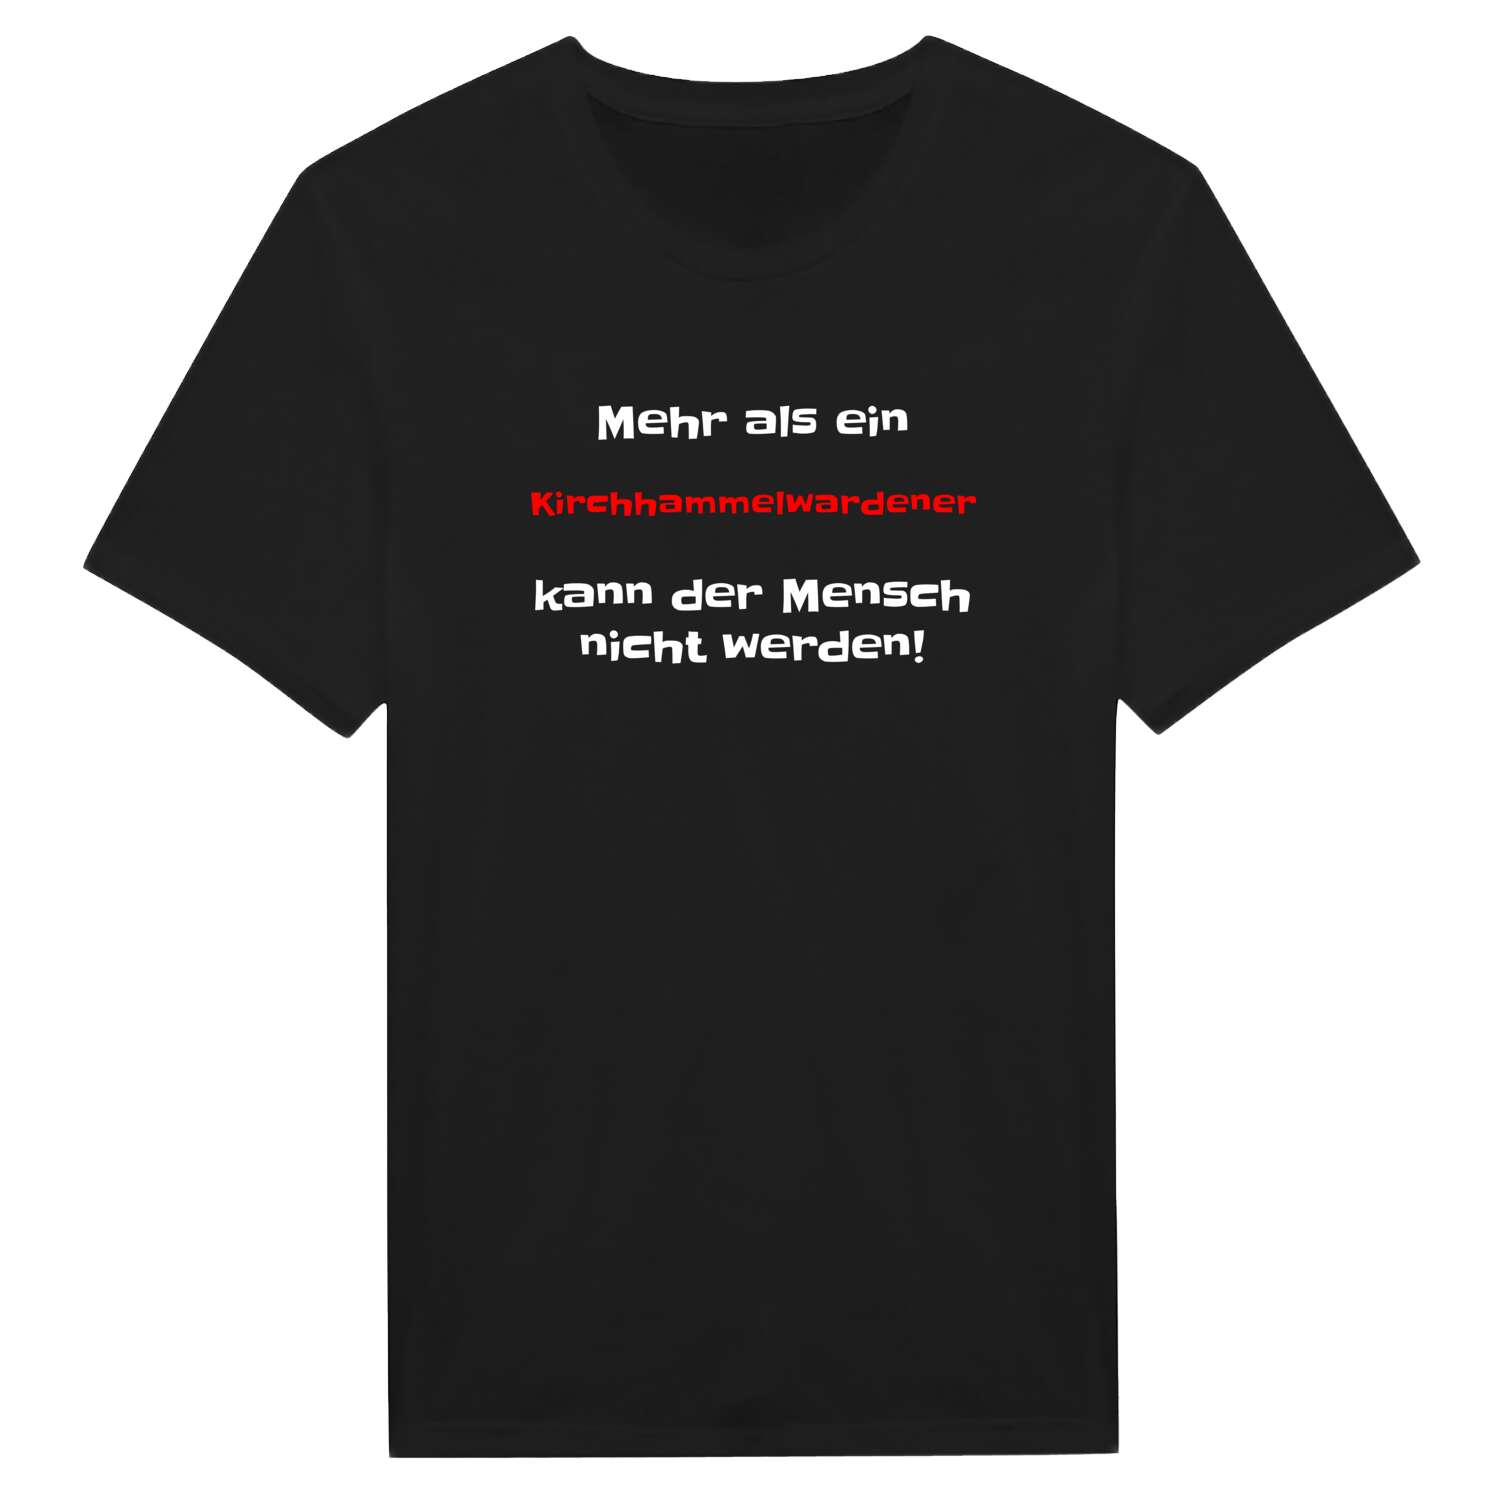 Kirchhammelwarden T-Shirt »Mehr als ein«